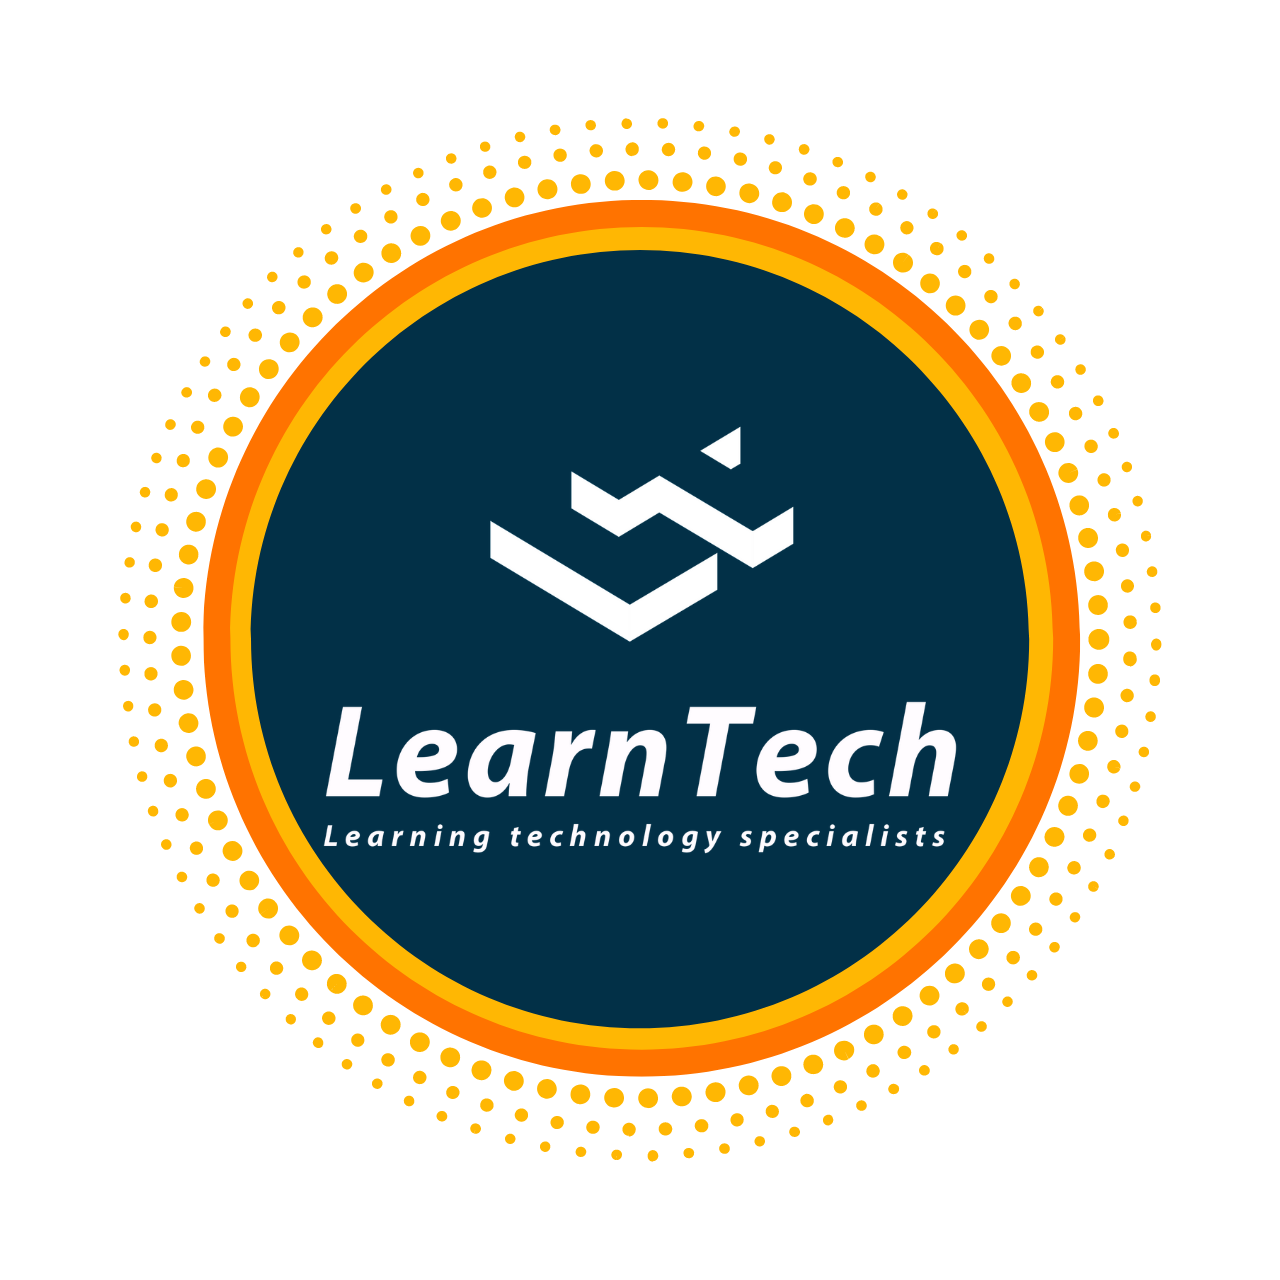 LearnTech